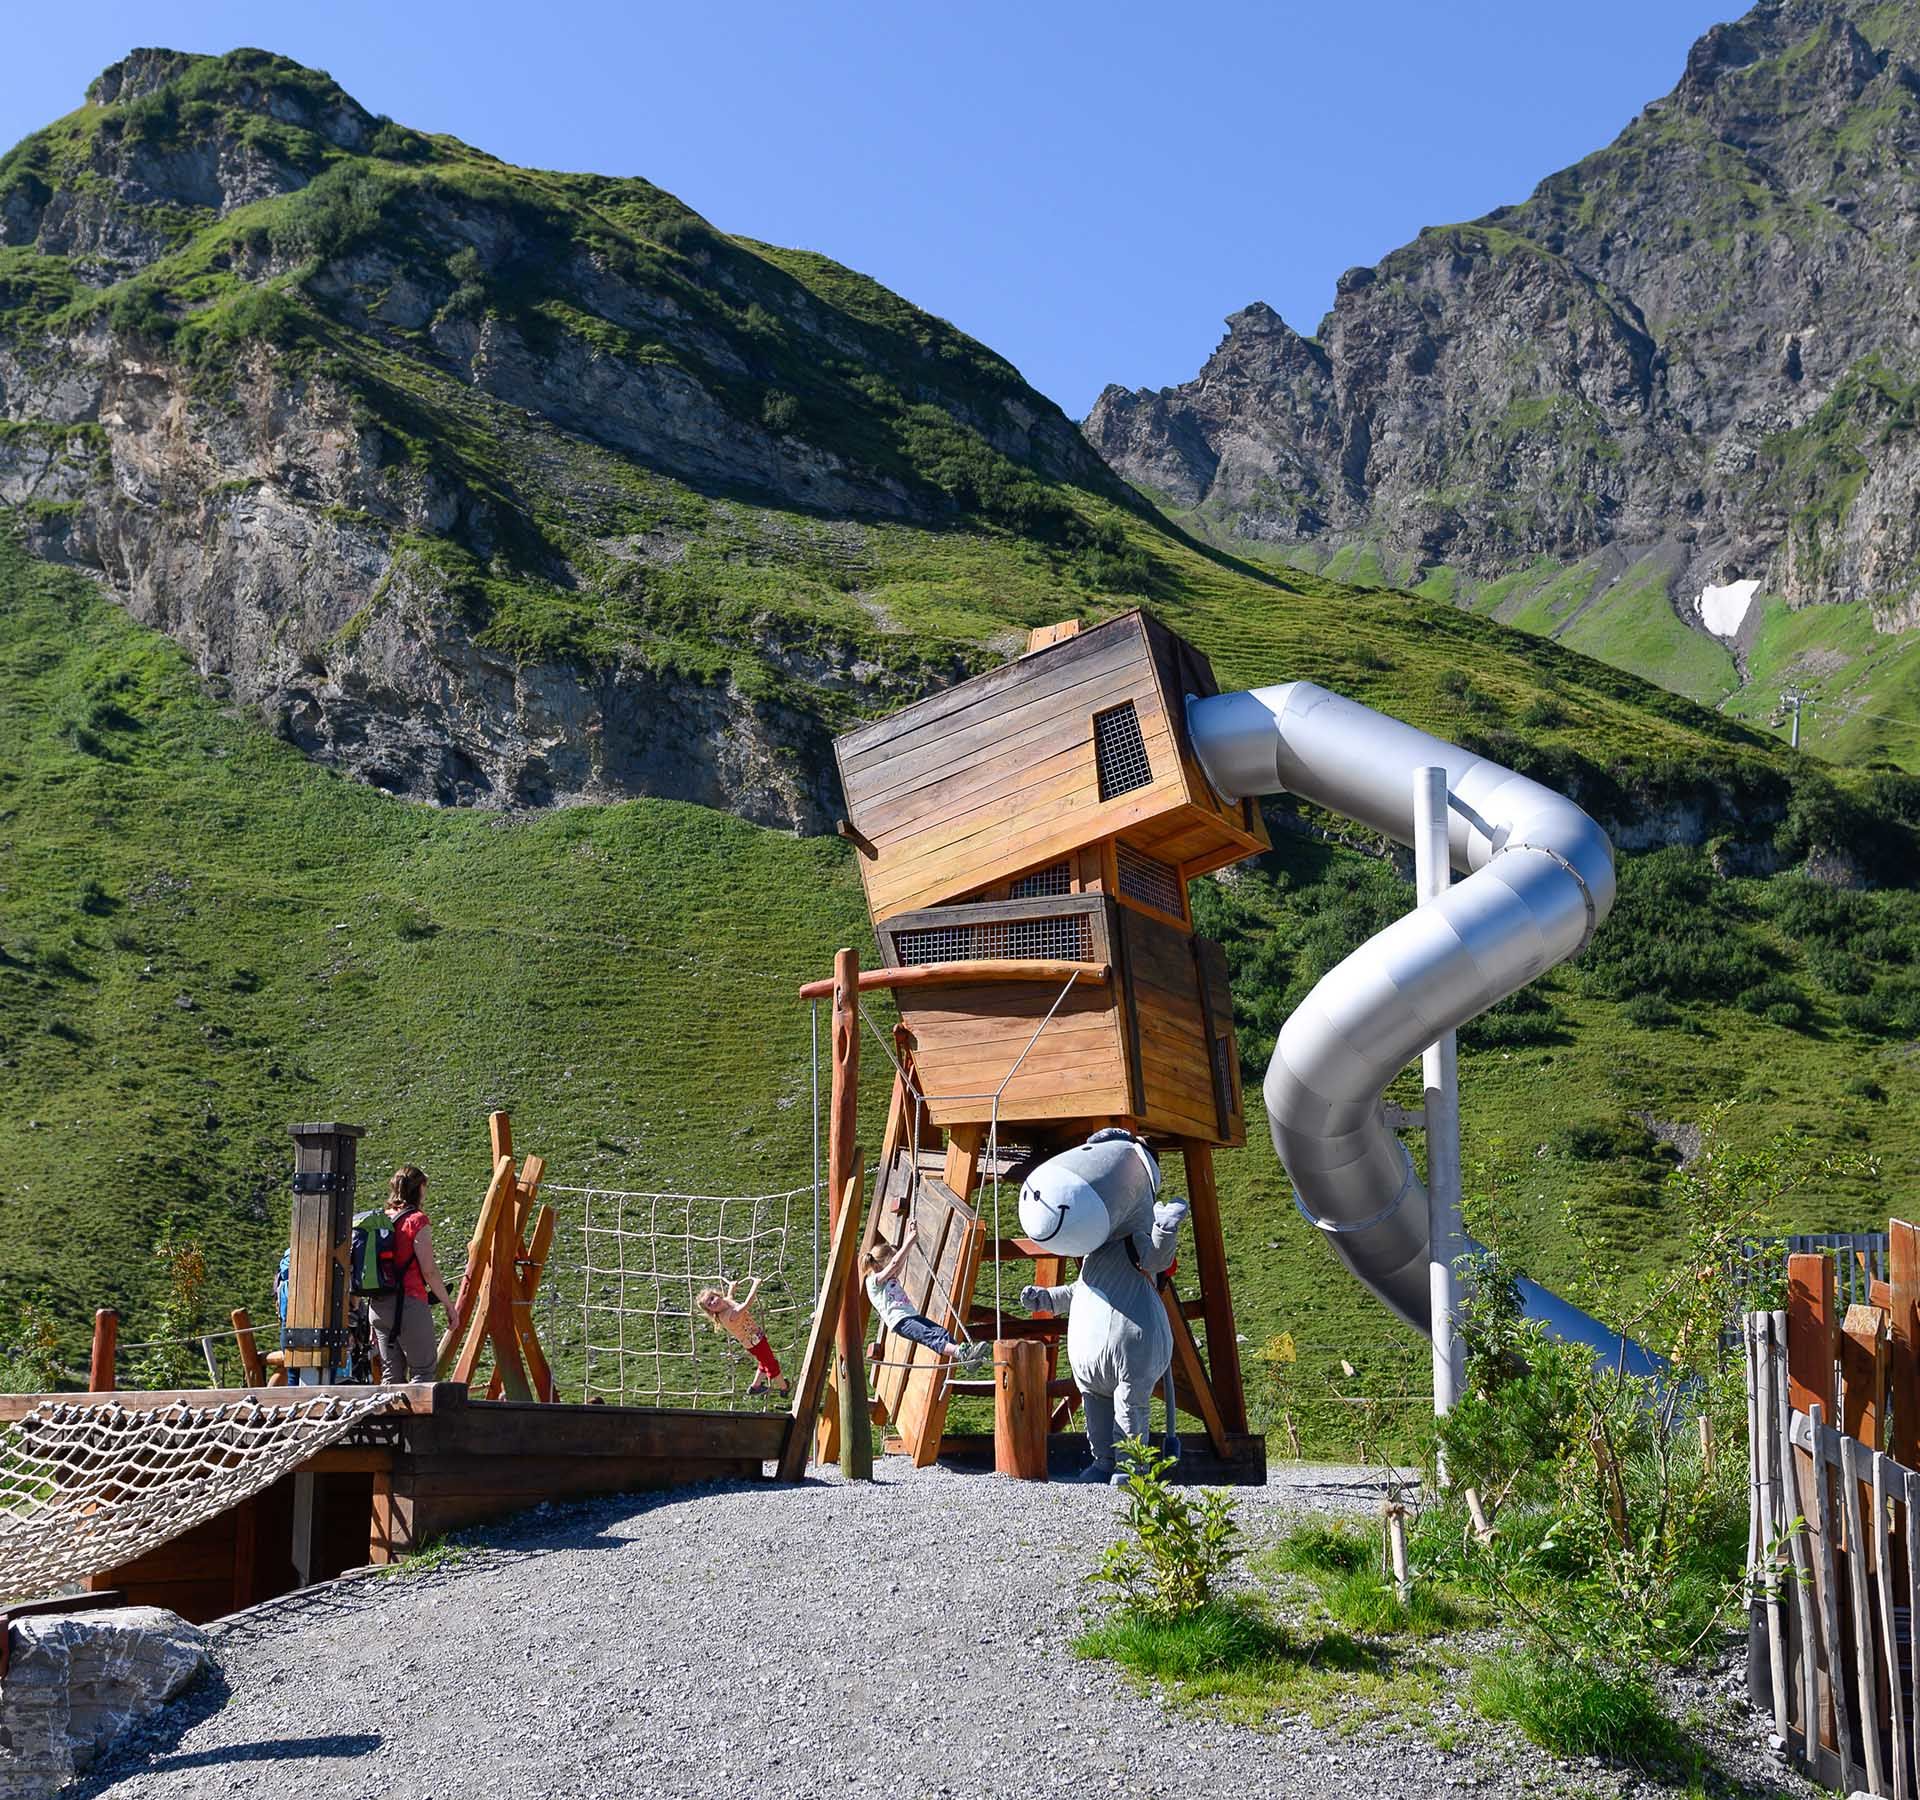 Blick auf den Schmuggler Spielplatz auf Engelberg-Trübsee mit Rutschbahn, Kletterhindernissen und vielem mehr. Dazu ein tolles Bergpanorama.